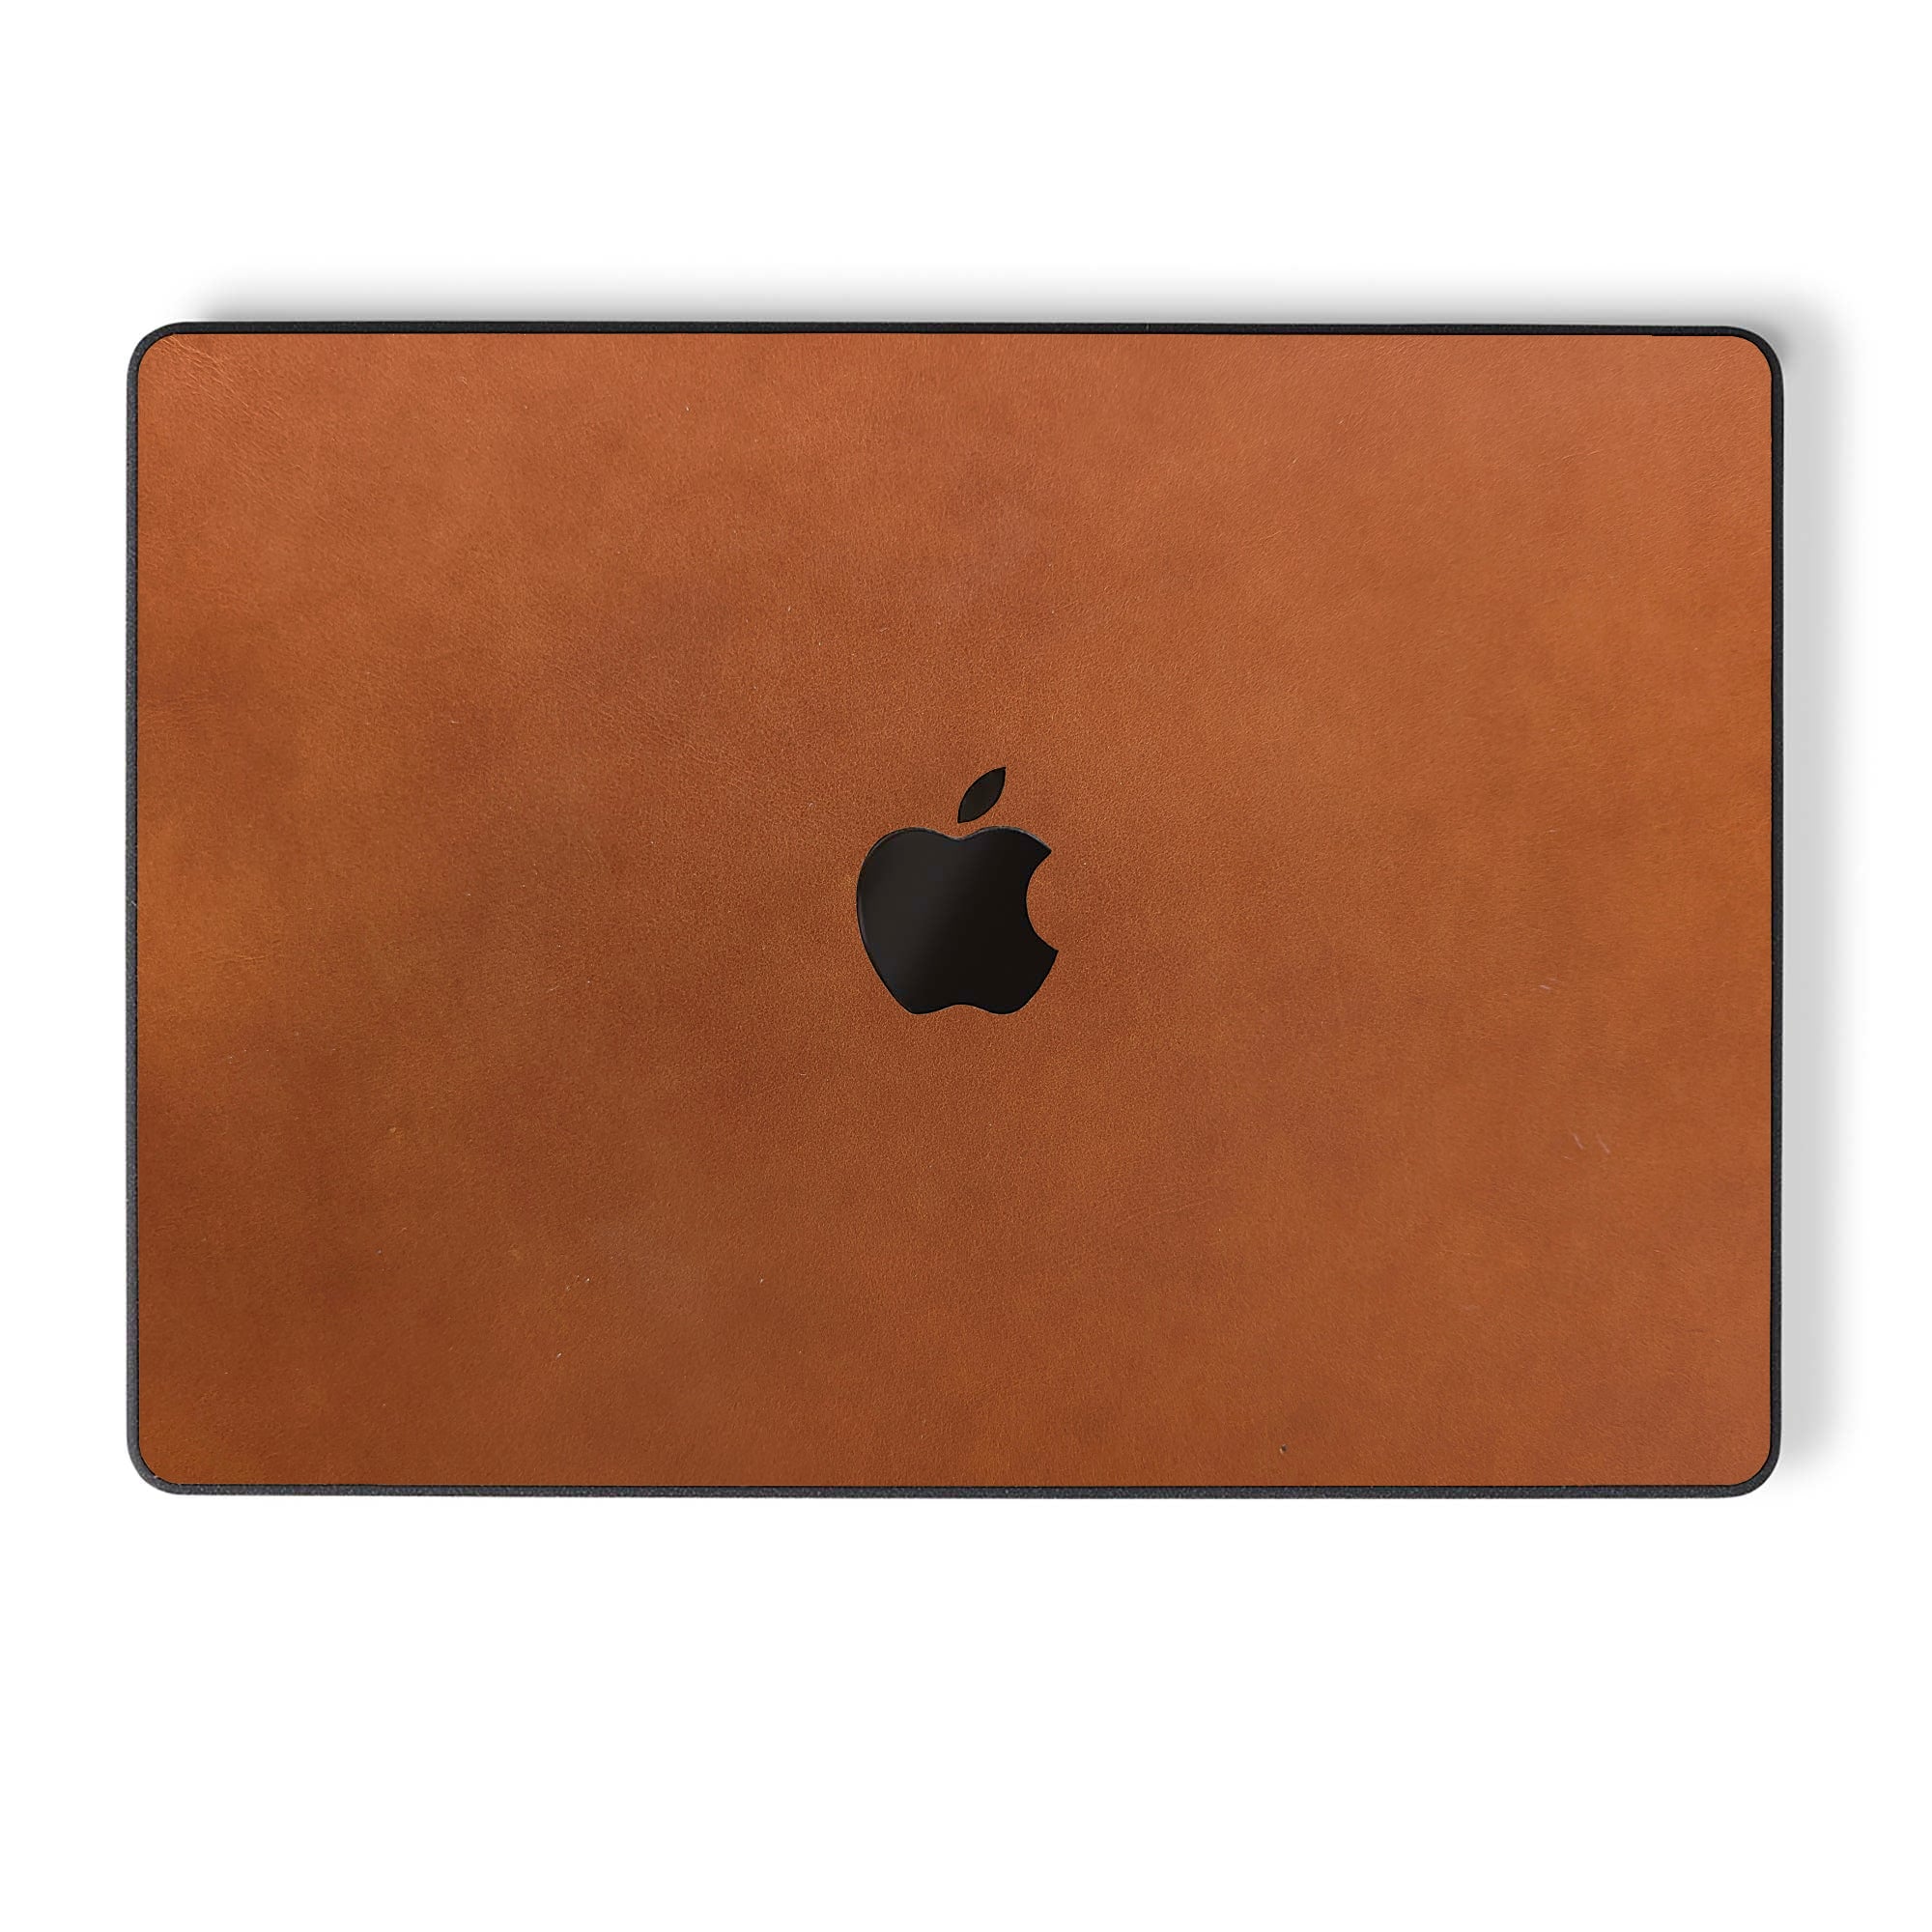 alt:Leather MacBook Case | var:cider |